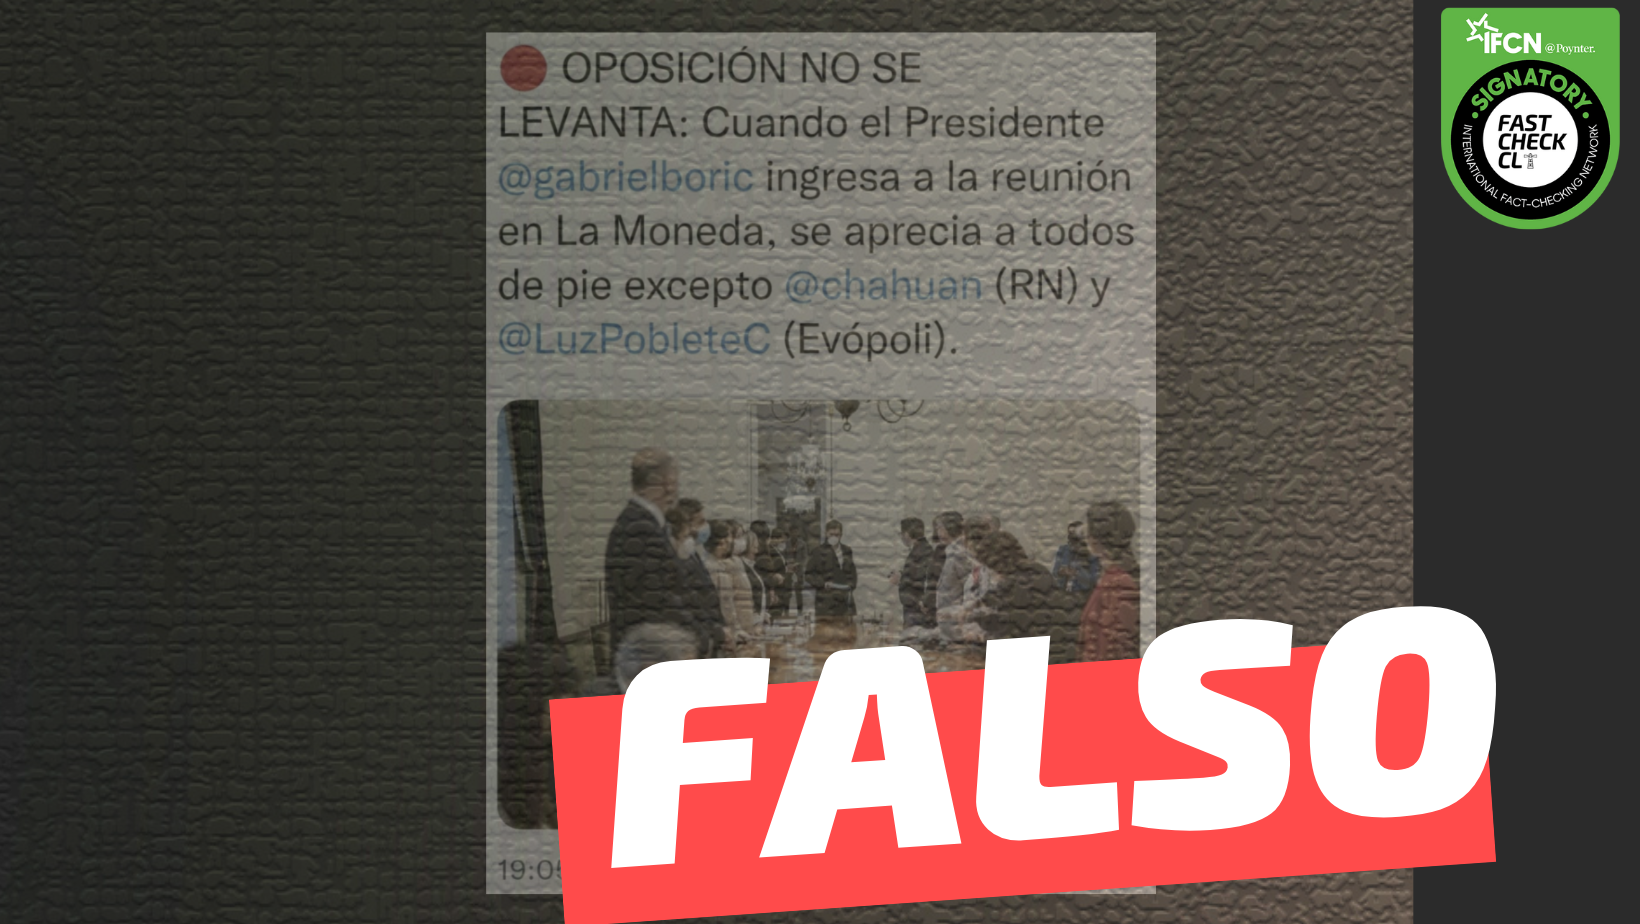 You are currently viewing Oposici贸n no se levant贸 cuando el Presidente Gabriel Boric ingres贸 a la reuni贸n en La Moneda: #Falso